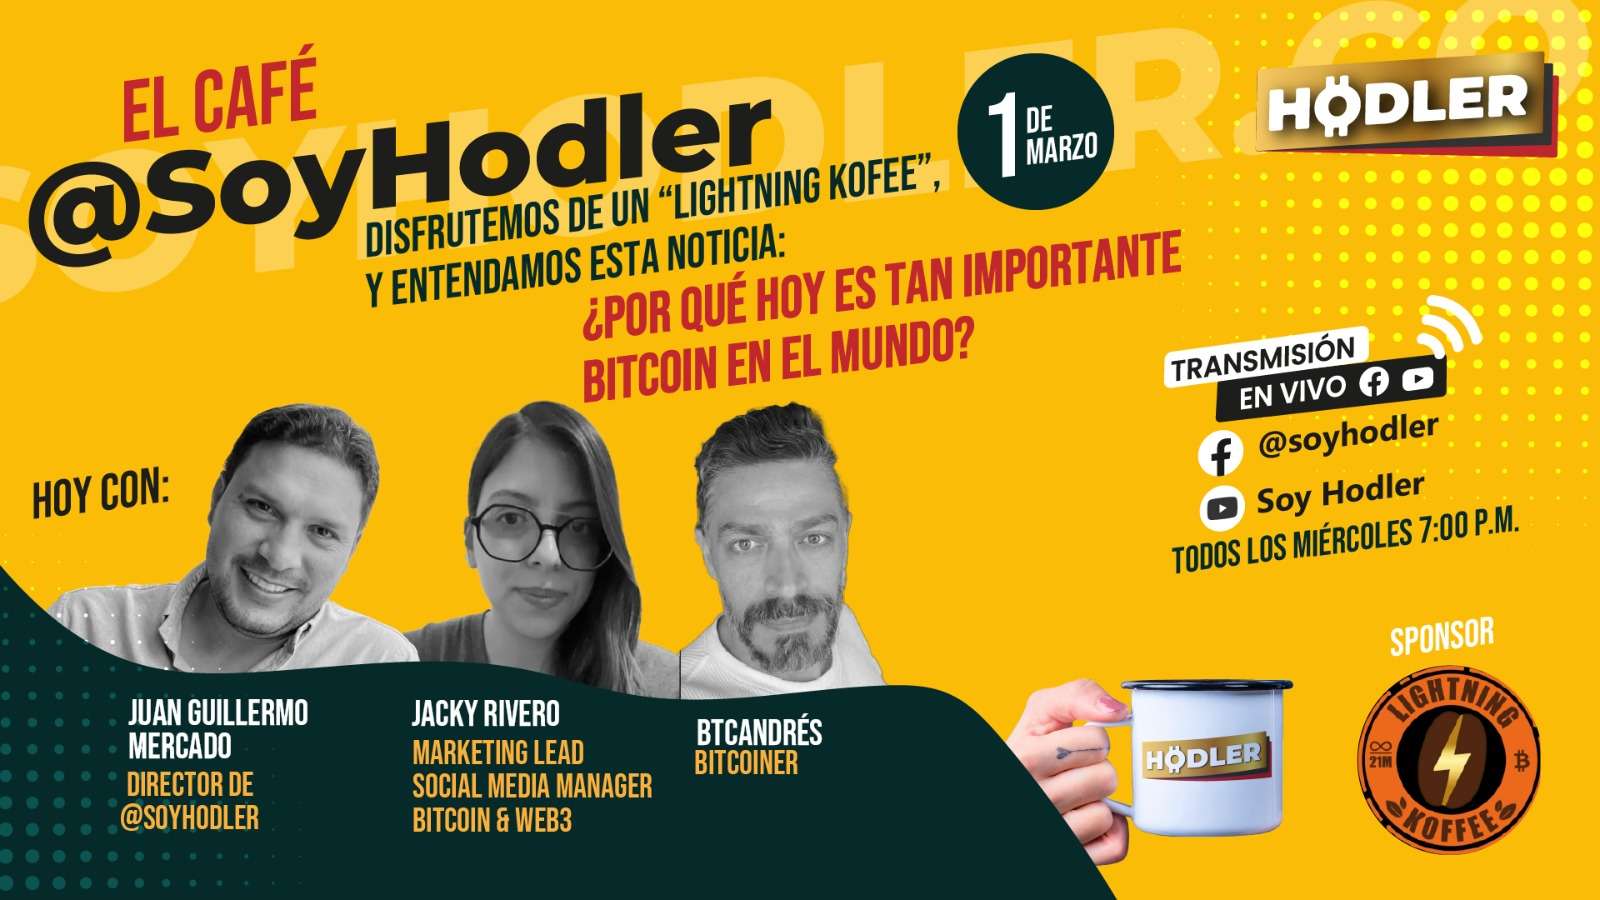 Café_hodler_1